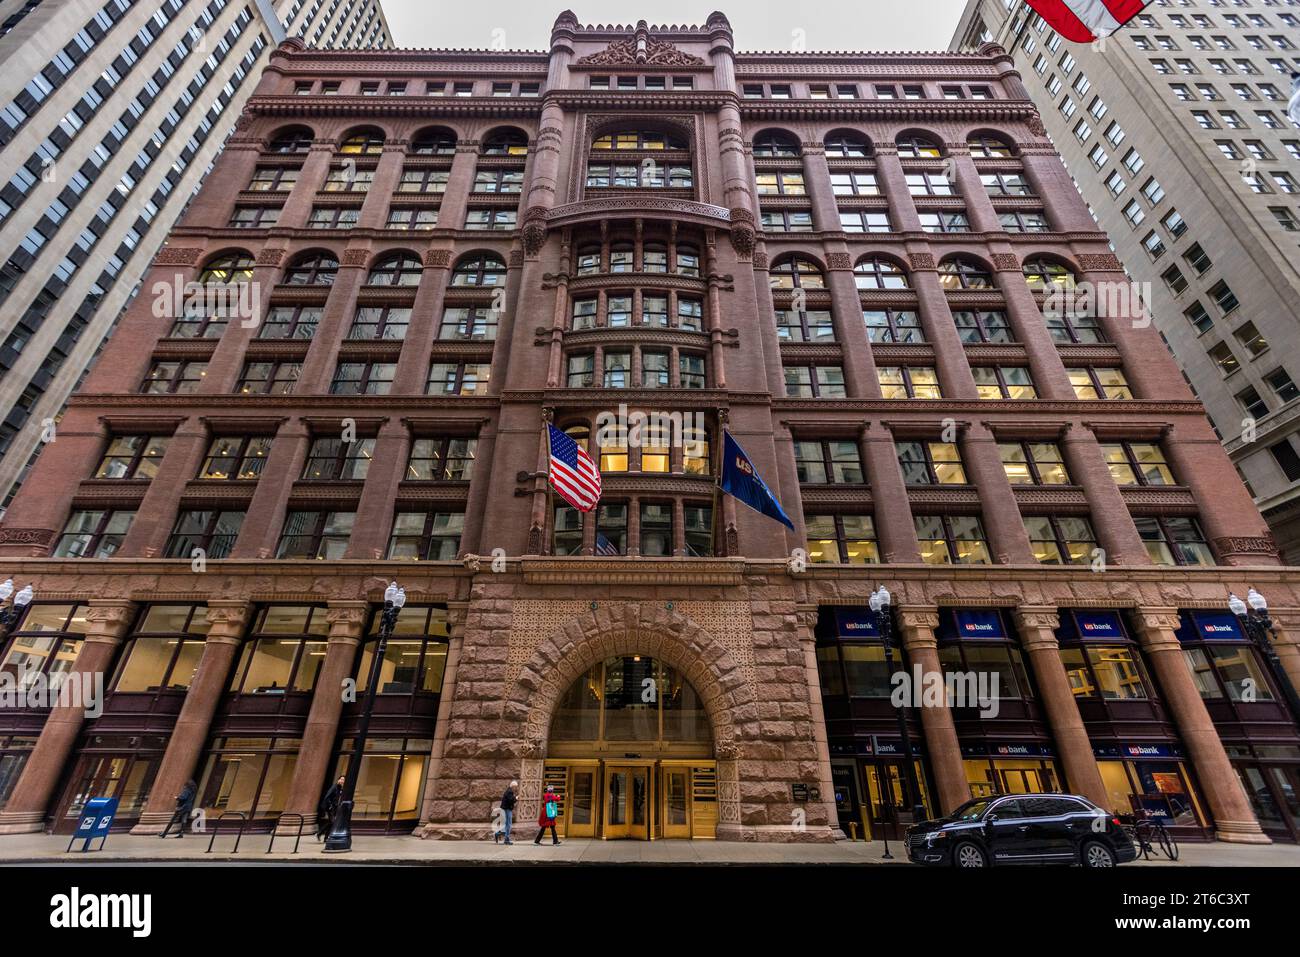 Rookery Building dal 1888 nel centro di Chicago, Illinois, Stati Uniti. L'alto edificio più antico di Chicago, con una struttura romanica, presenta una lobby progettata da Frank Lloyd Wright Foto Stock